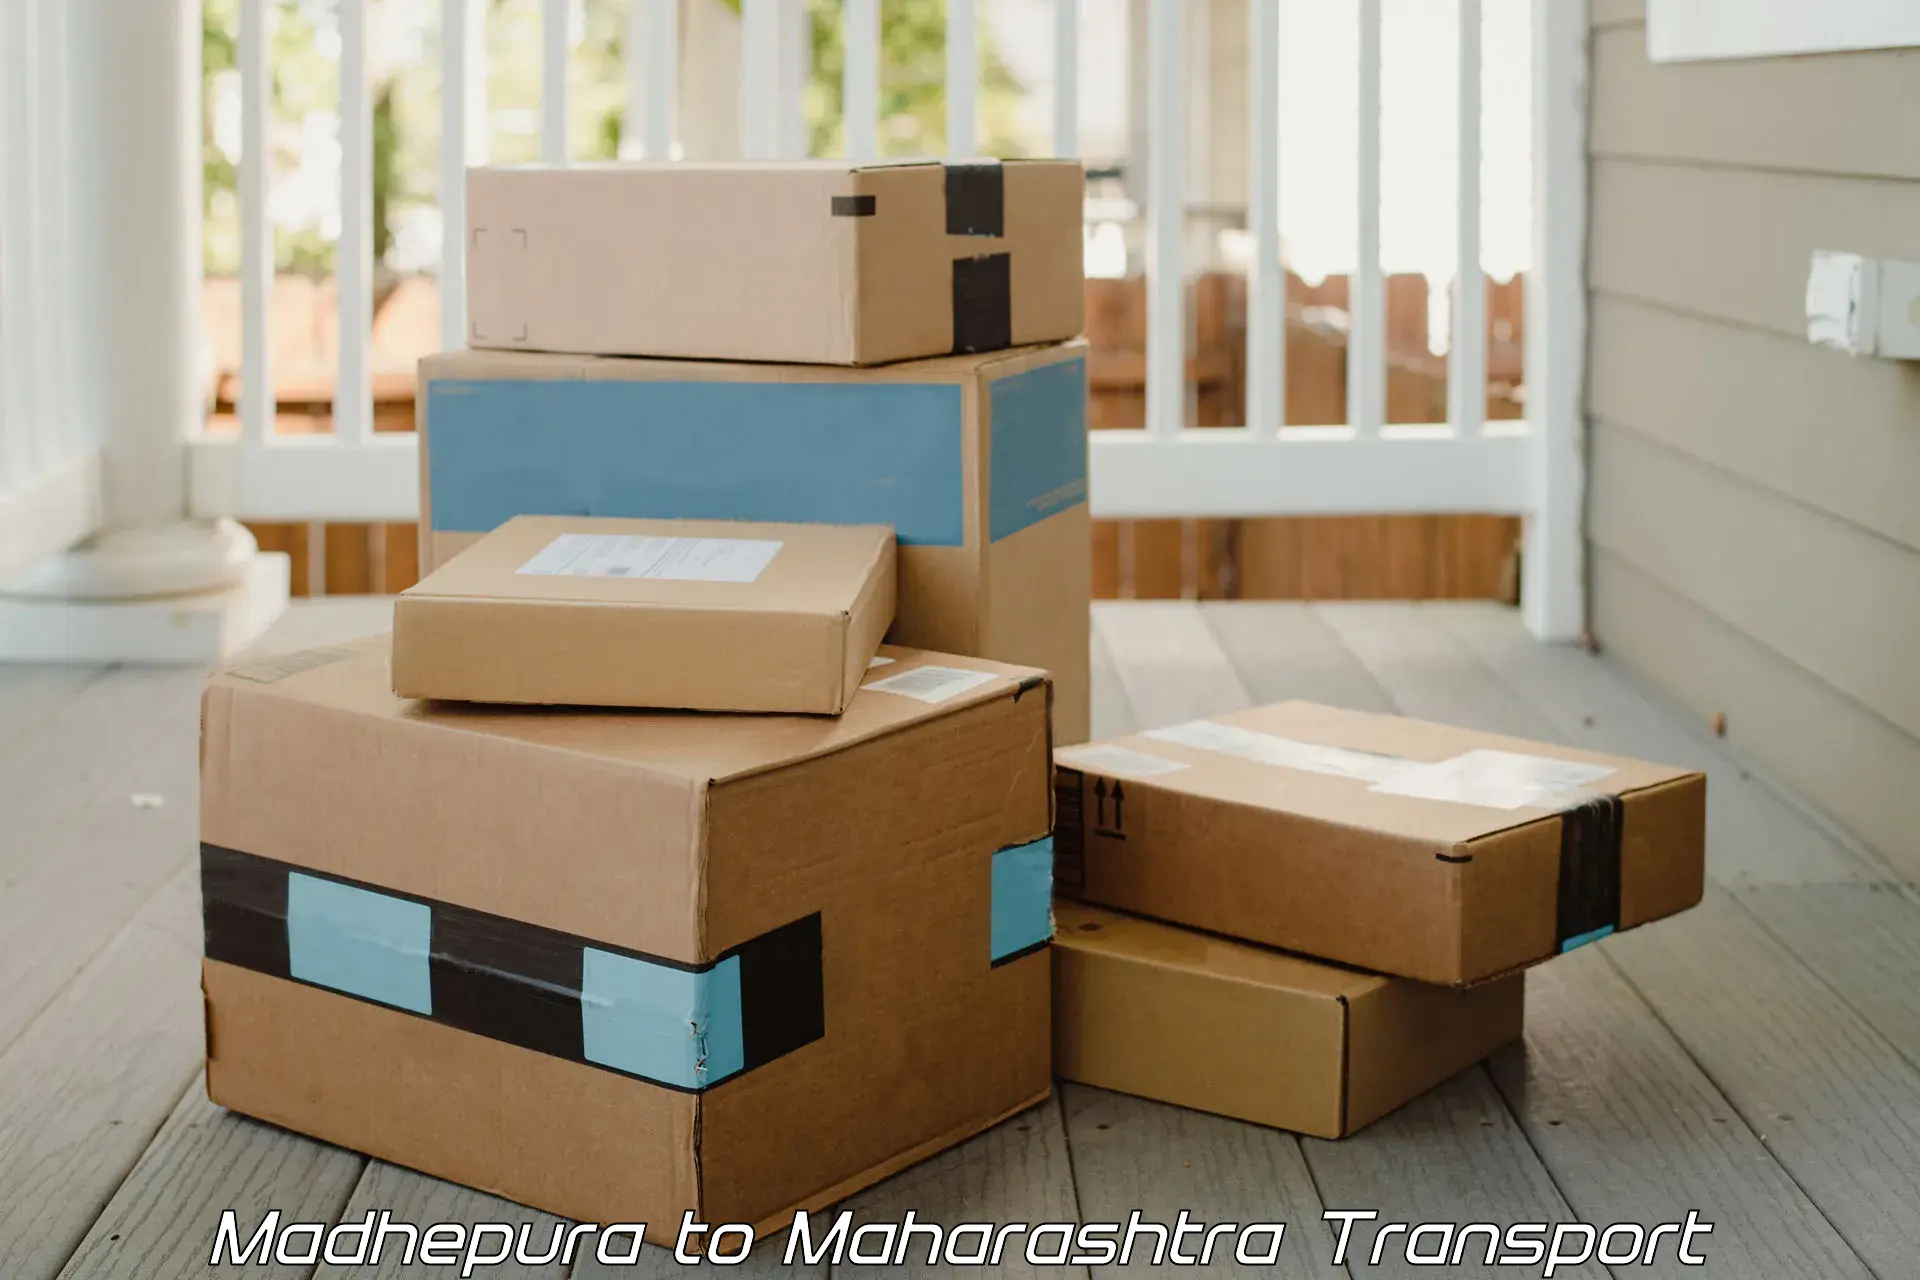 Luggage transport services Madhepura to Alephata